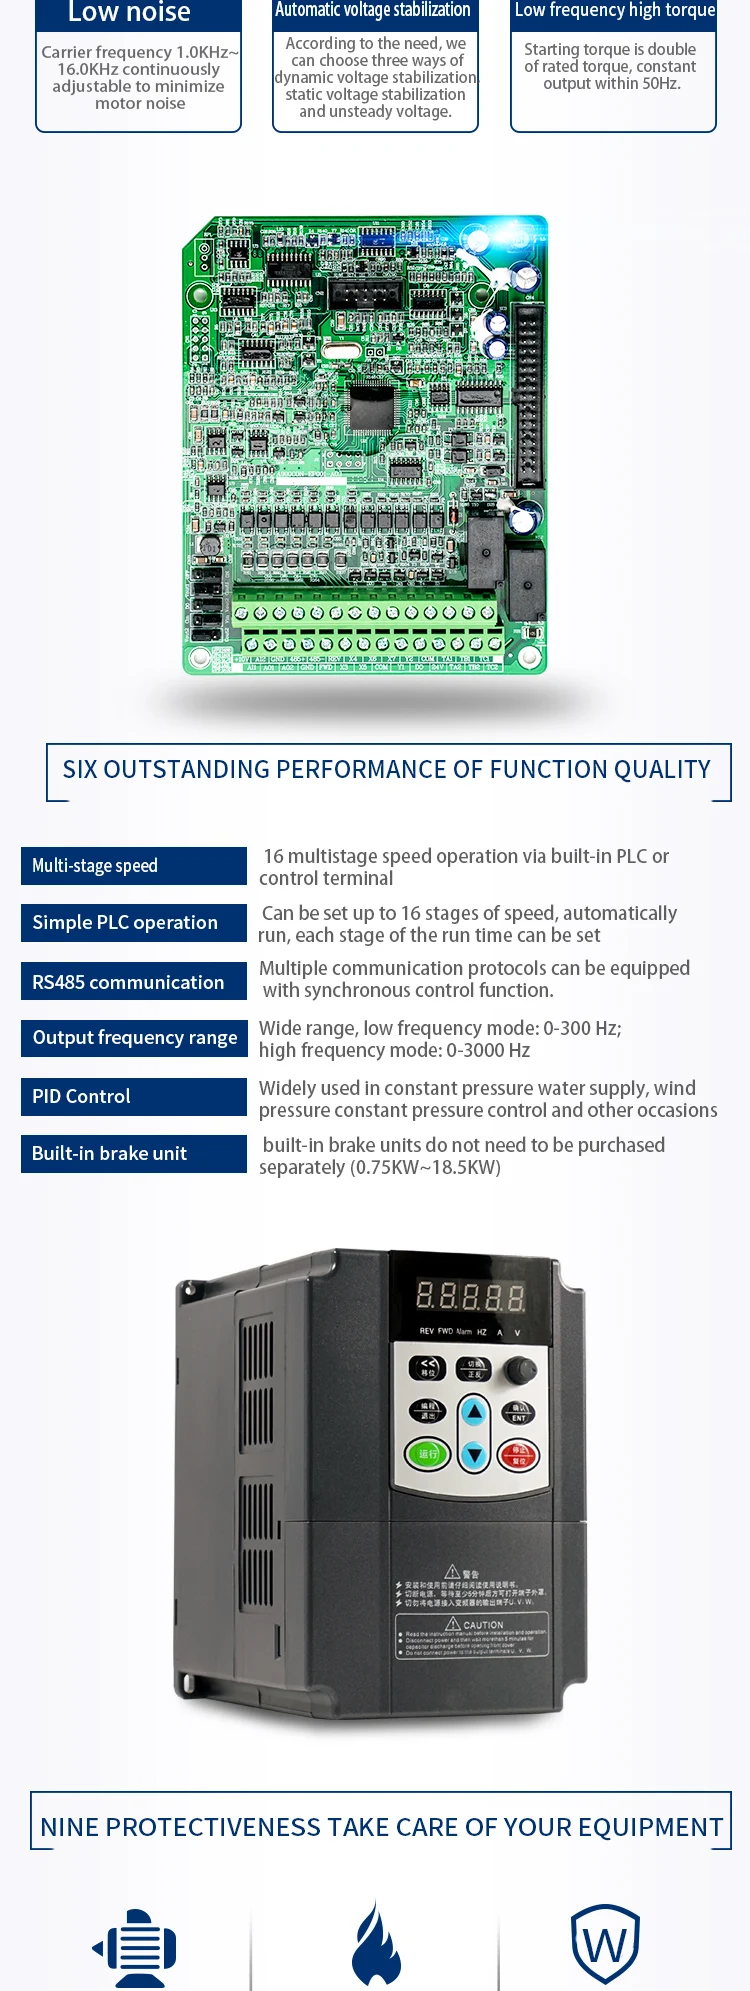 Sako VFD 380V 7.5KW инвертор переменной частоты тройной(3) фазы для управления скоростью двигателя